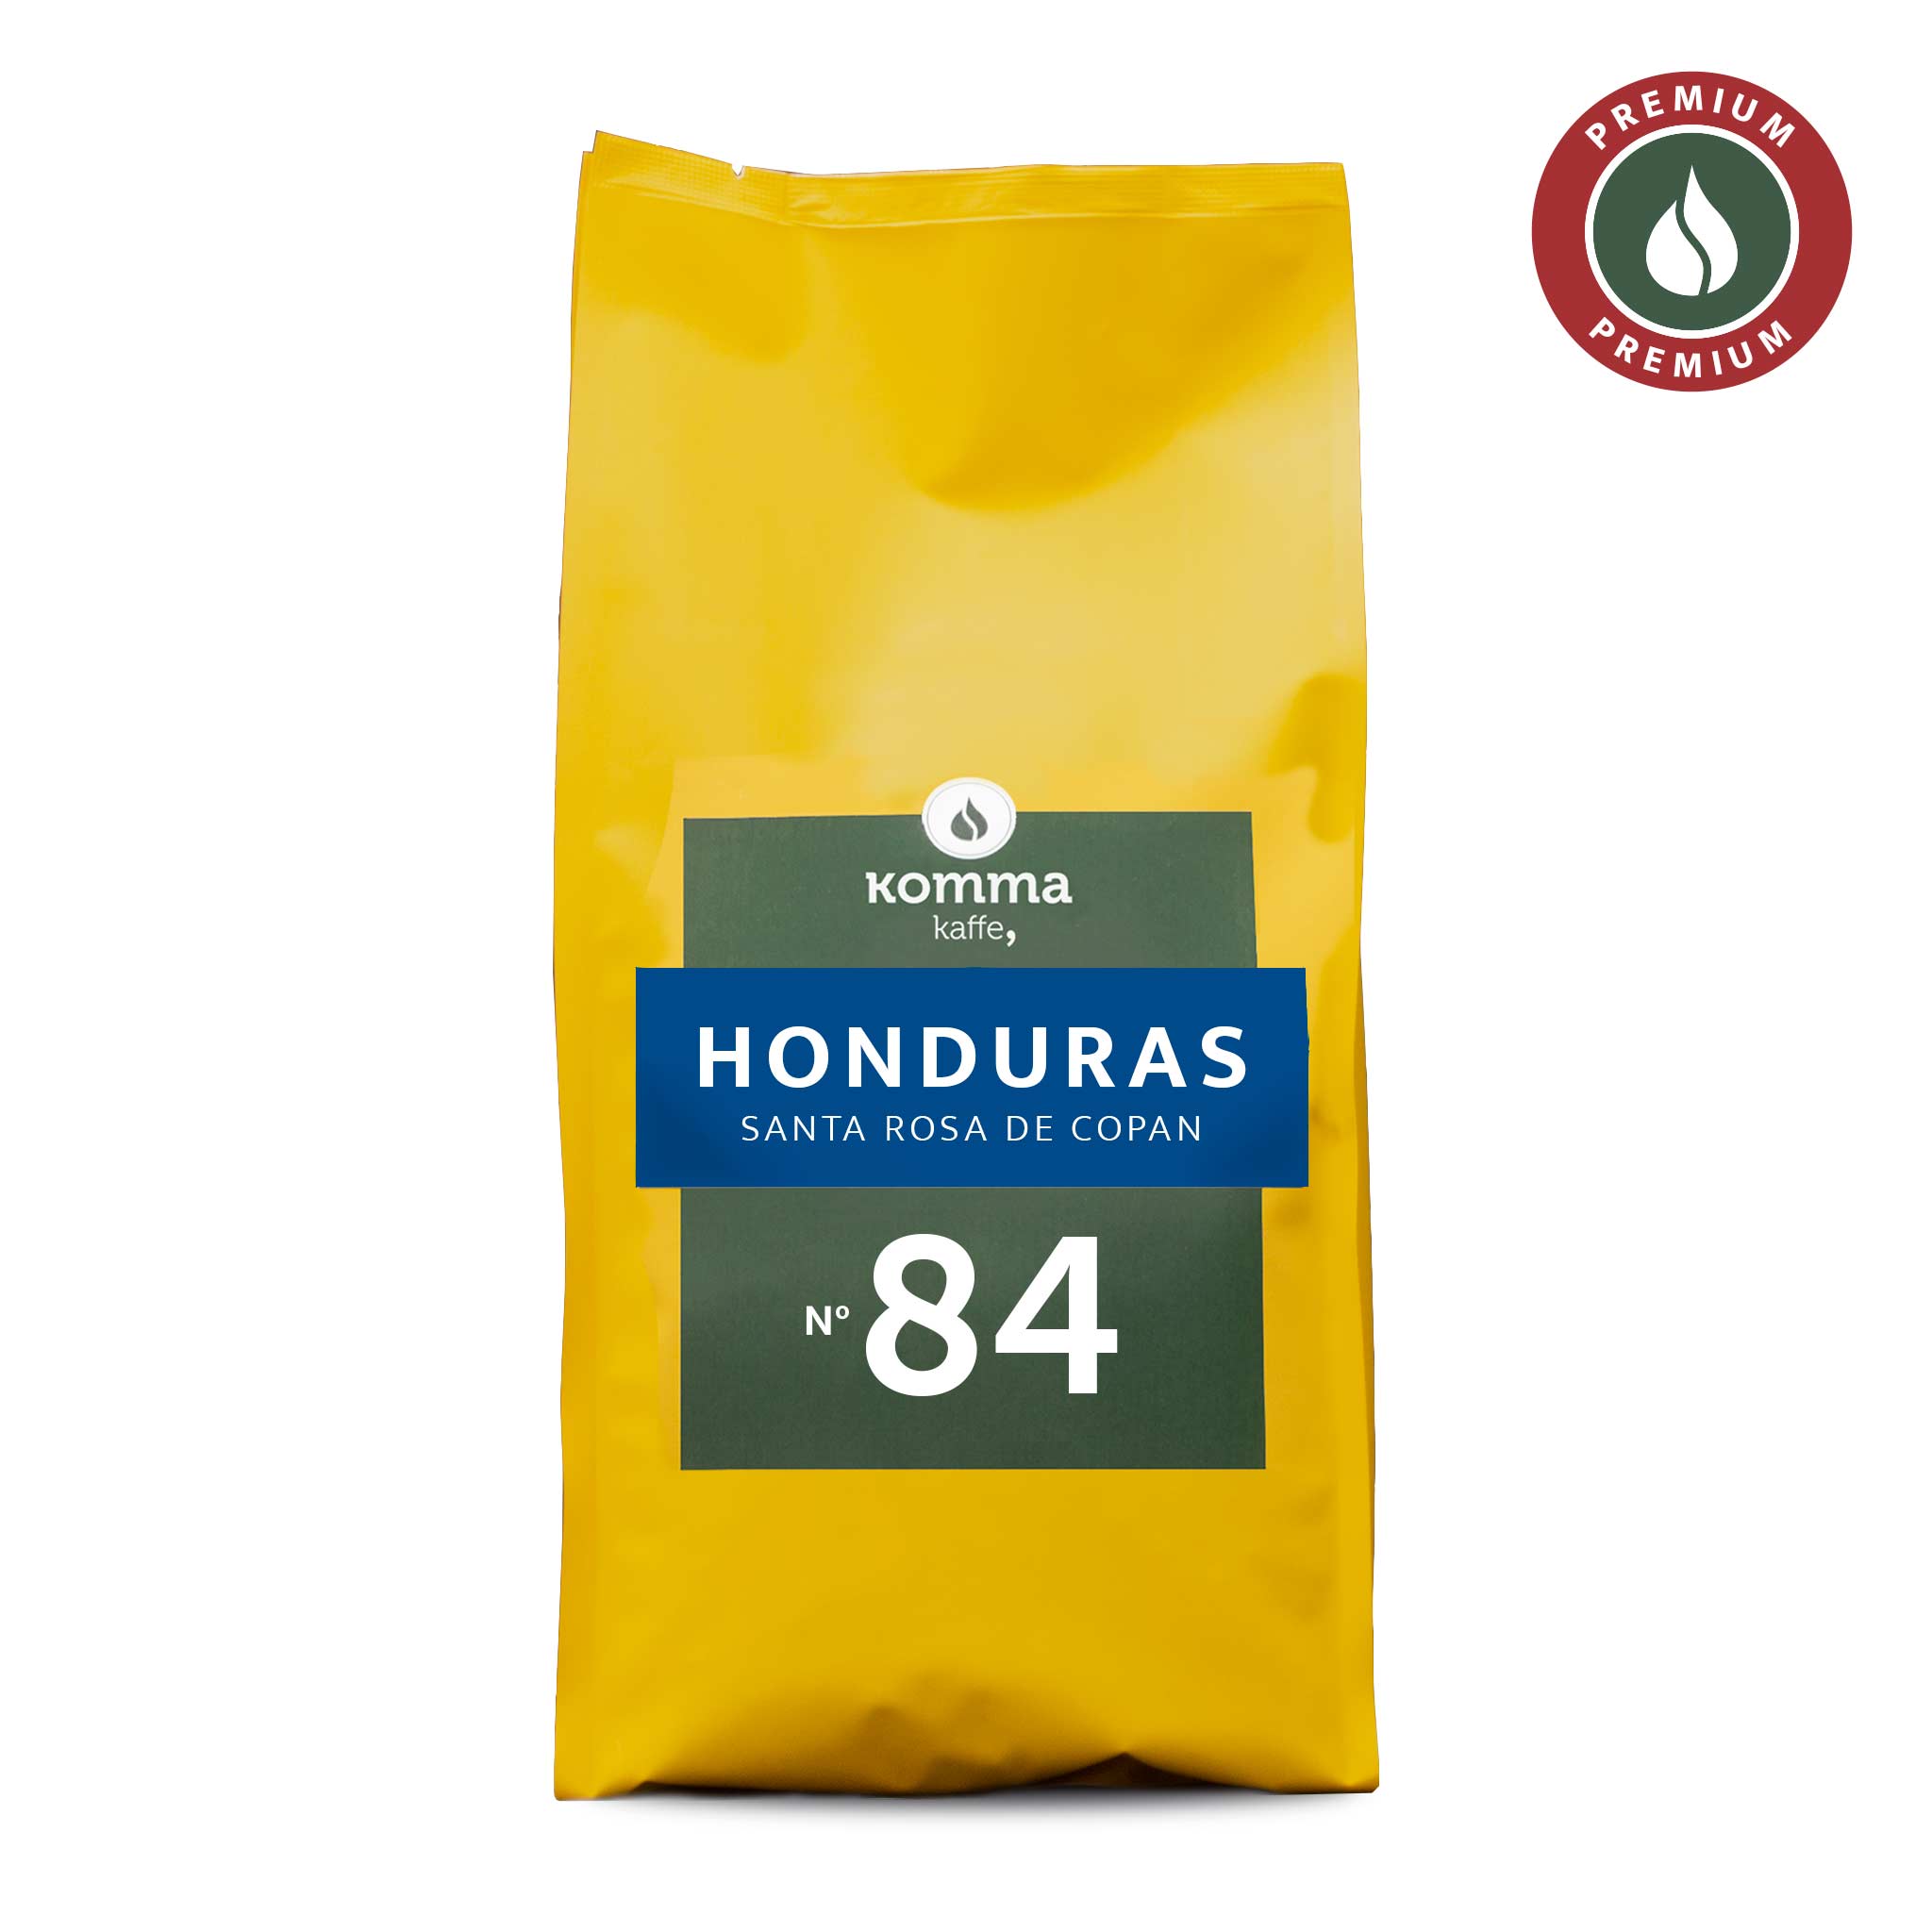 No. 84 | Honduras